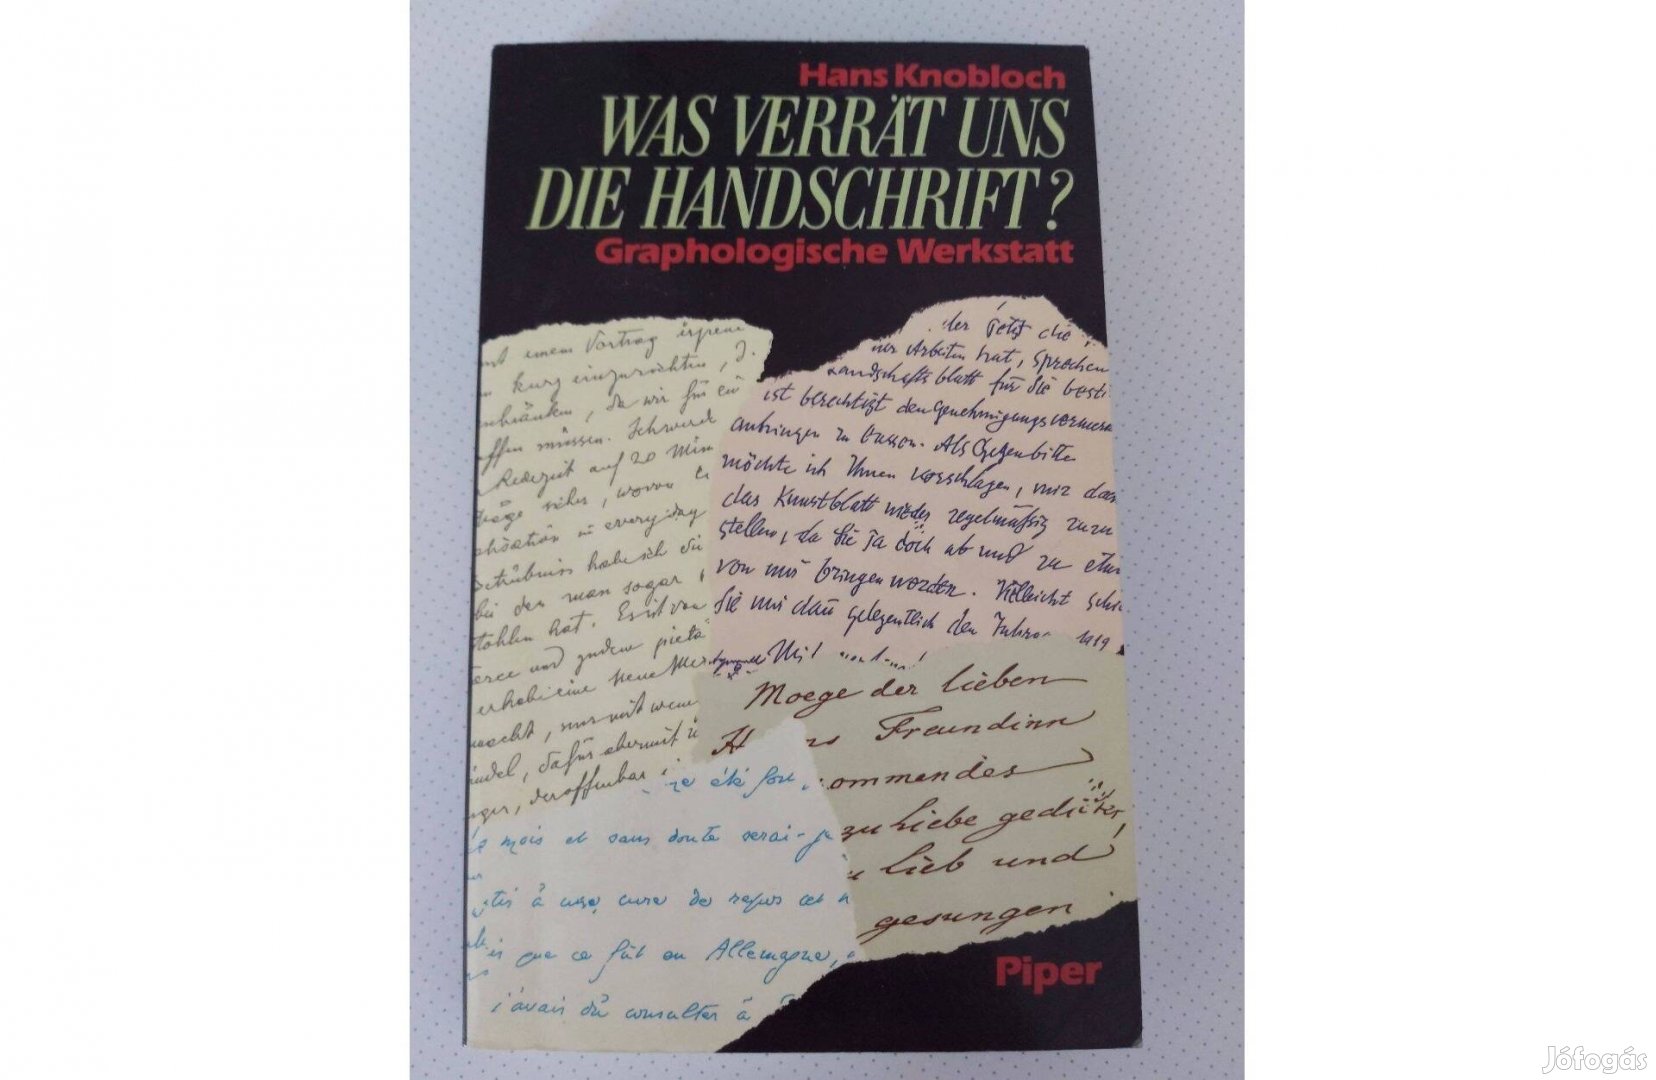 Hans Knobloch: Was verrat uns die Handschrift?